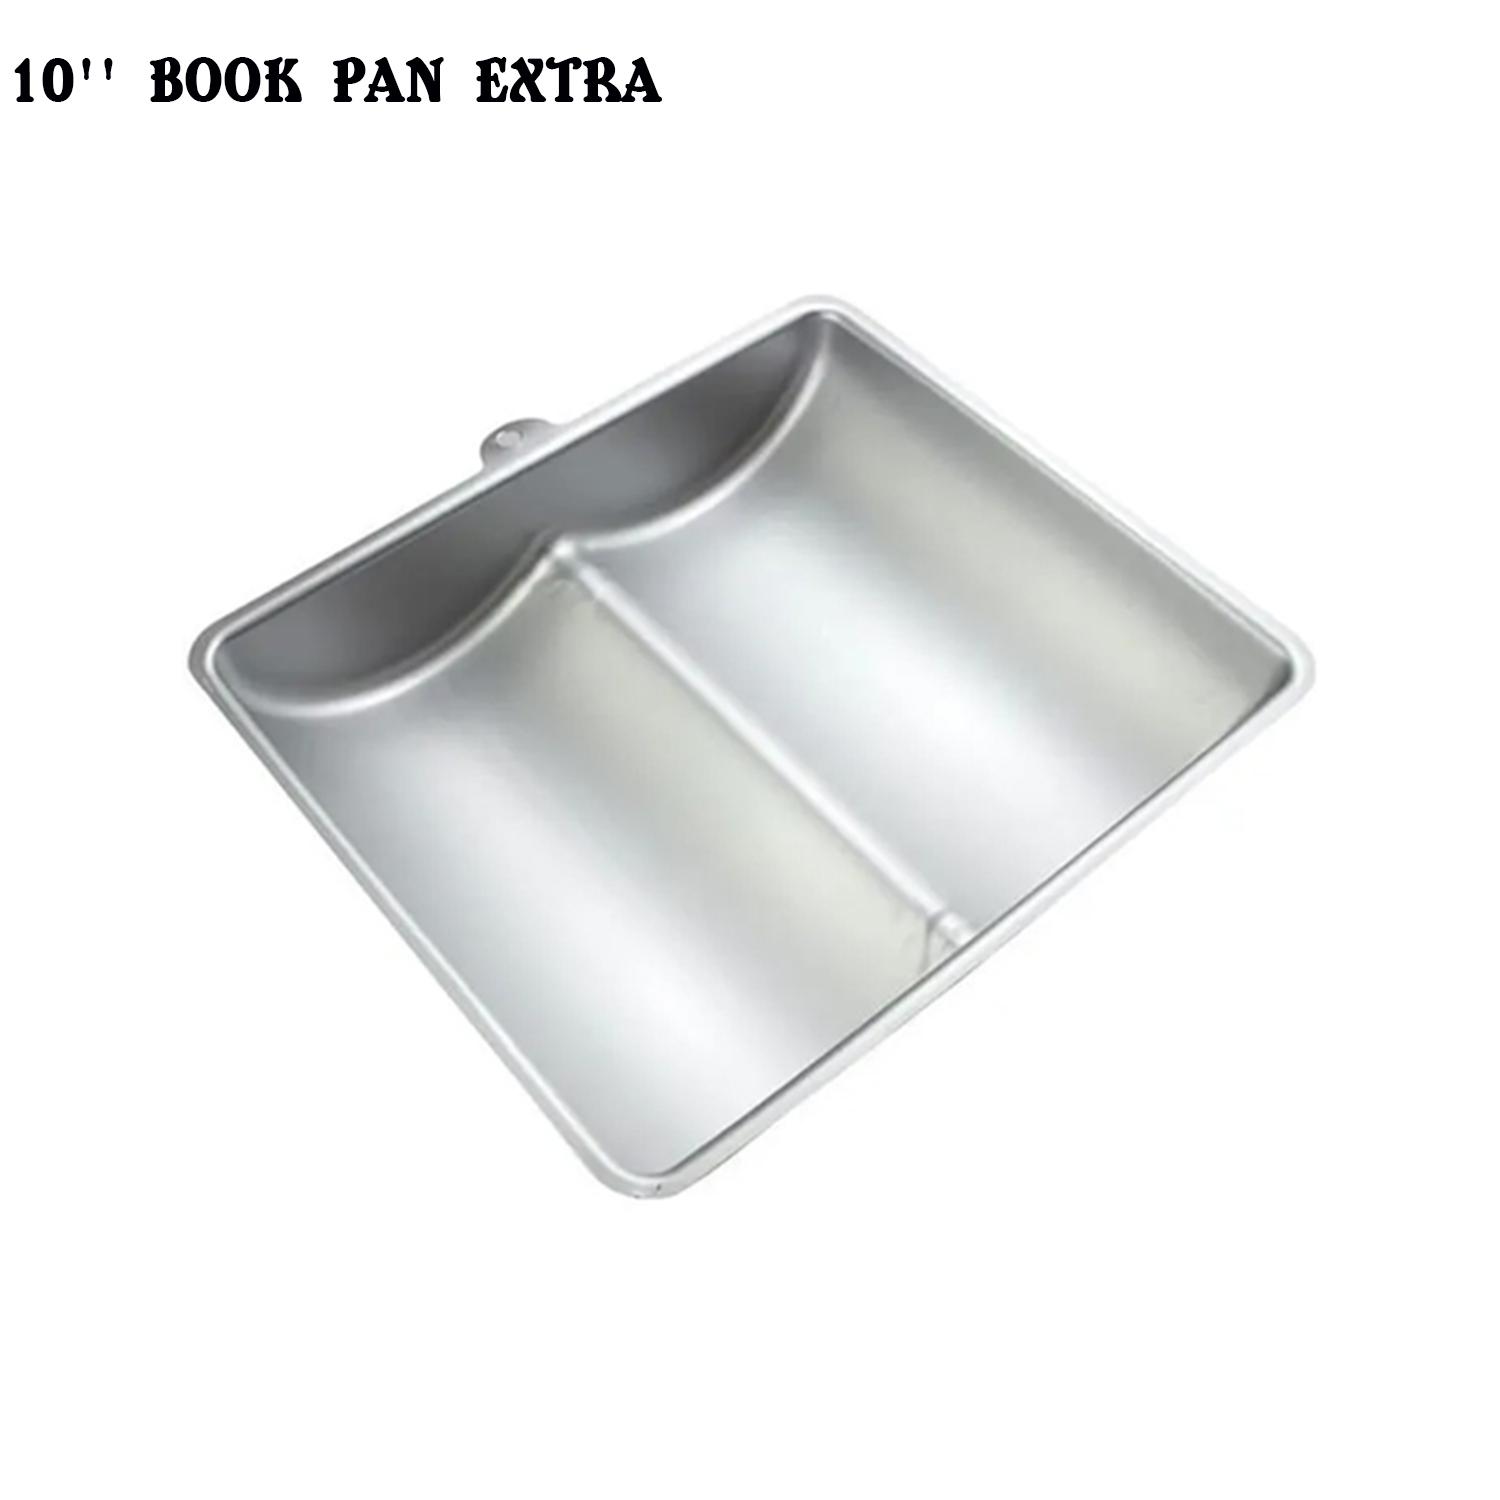 10'' BOOK PAN EXTRA